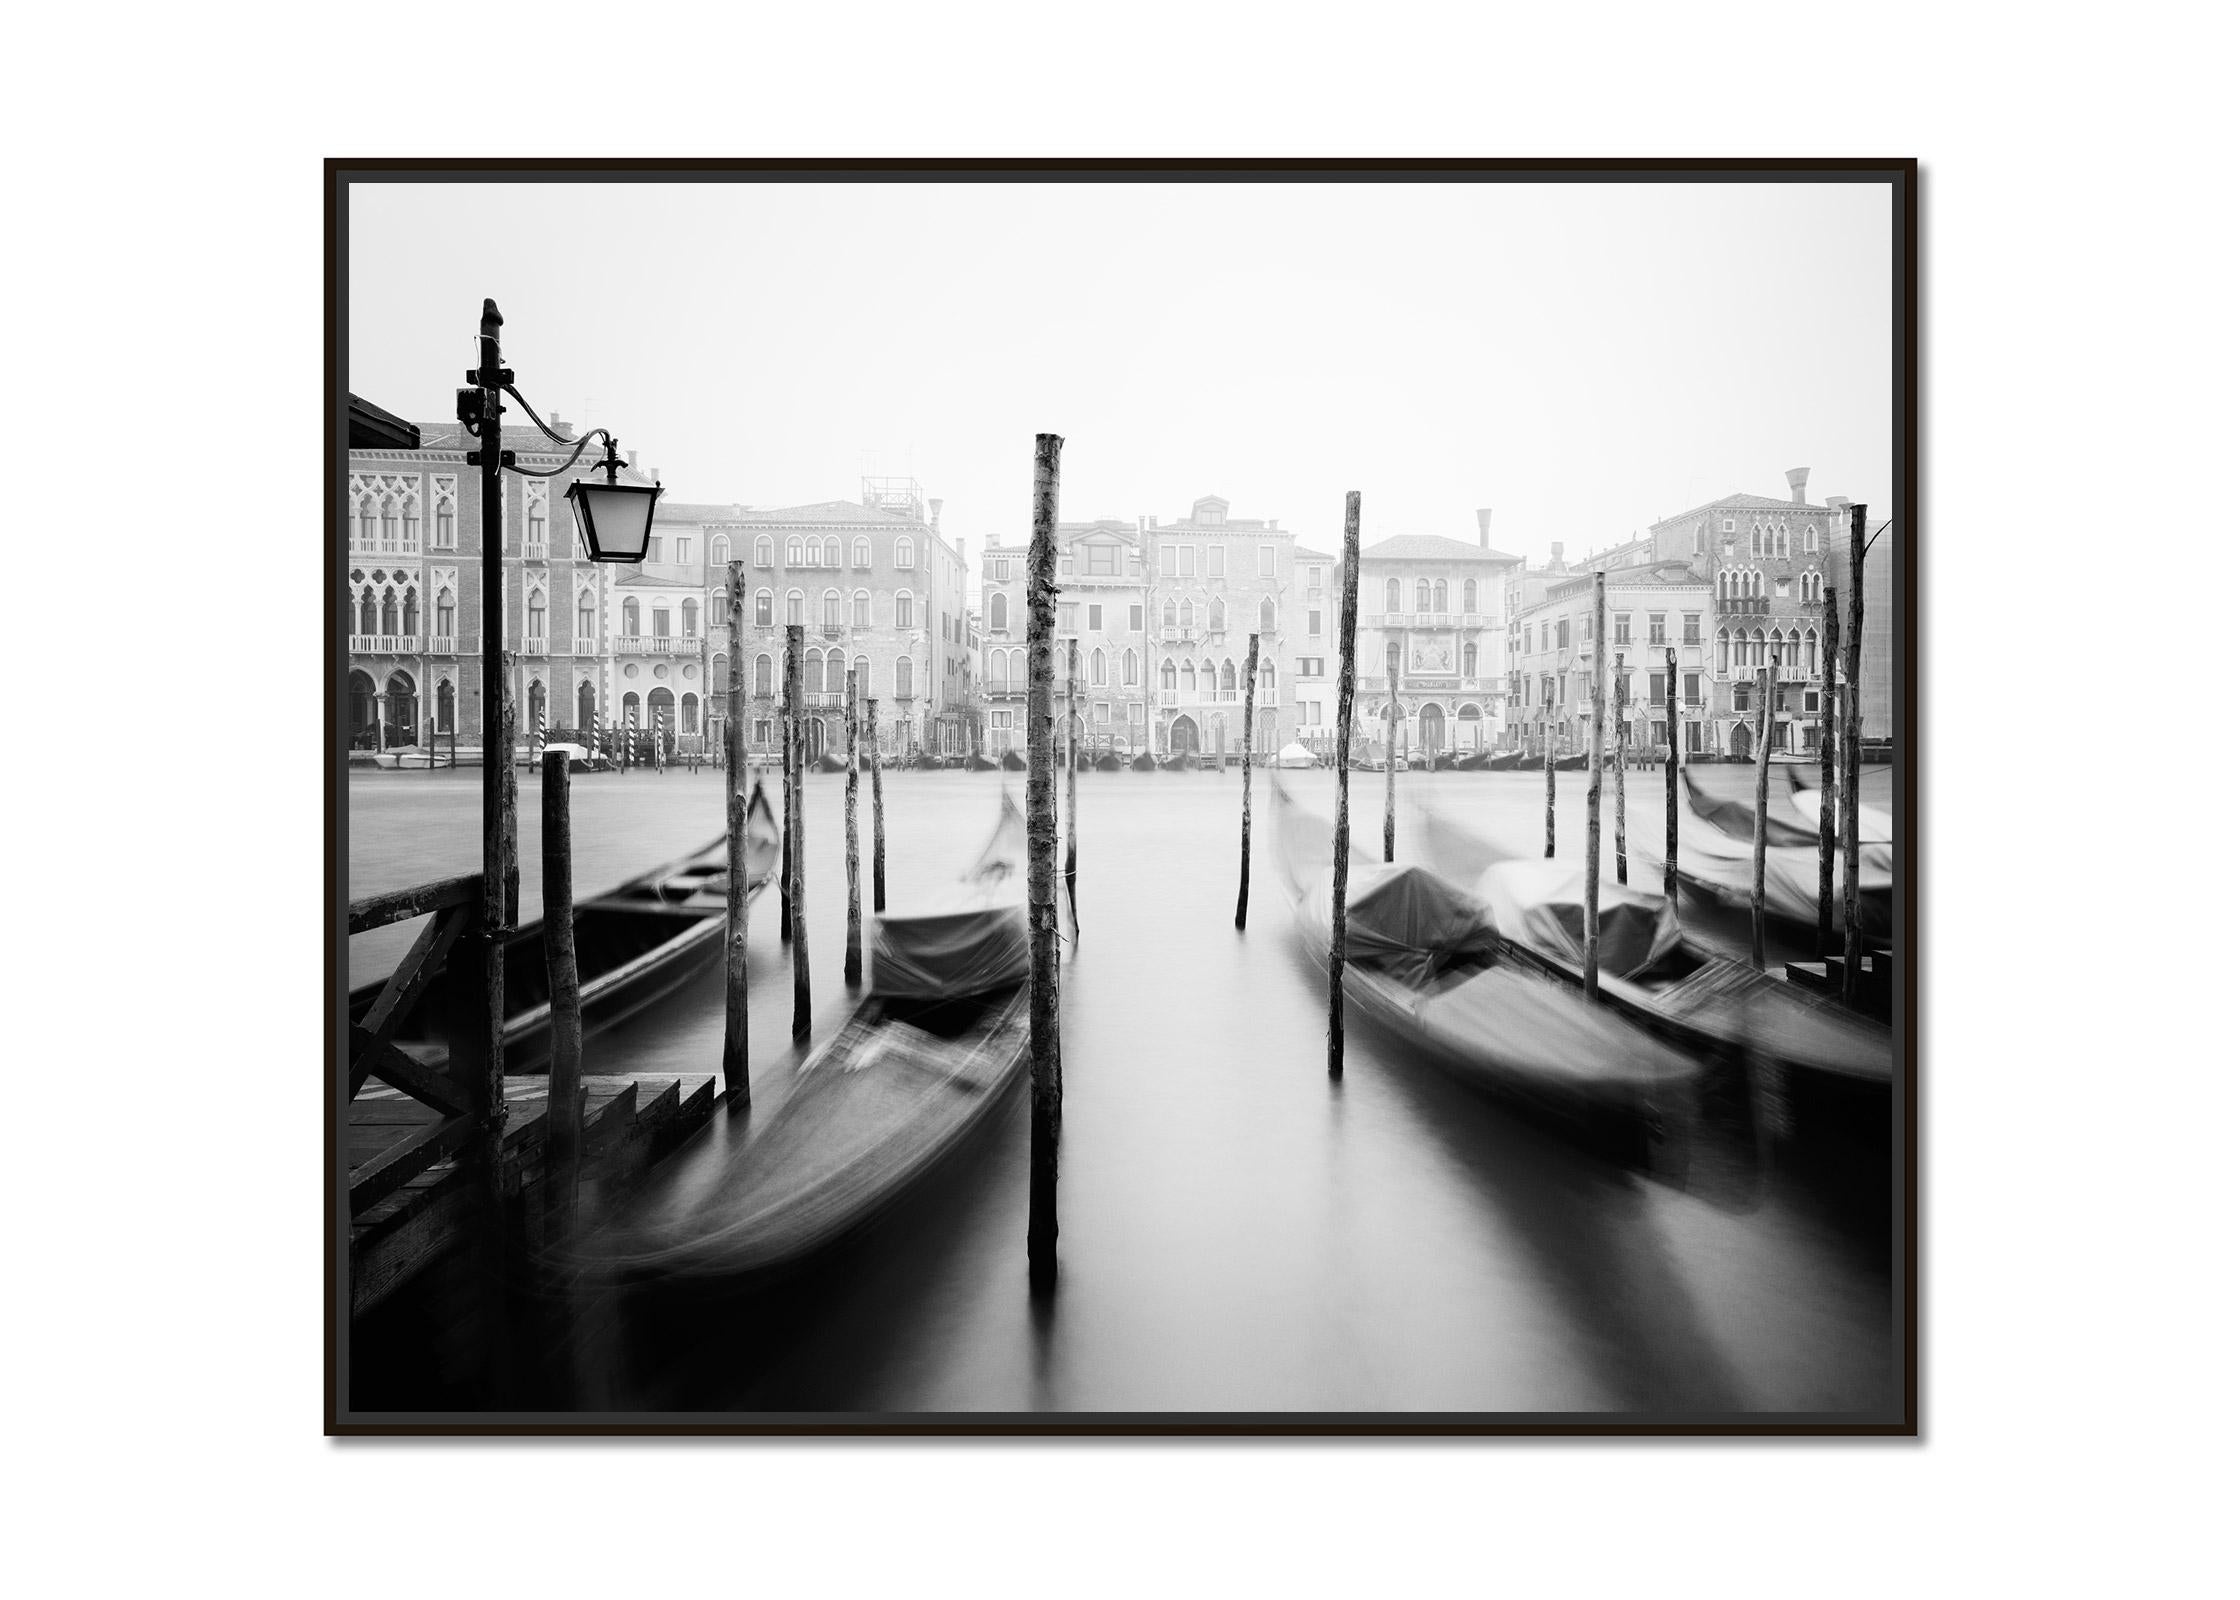 Góndola, Canal Grande, Venecia, fotografía artística en blanco y negro de paisajes urbanos - Photograph de Gerald Berghammer